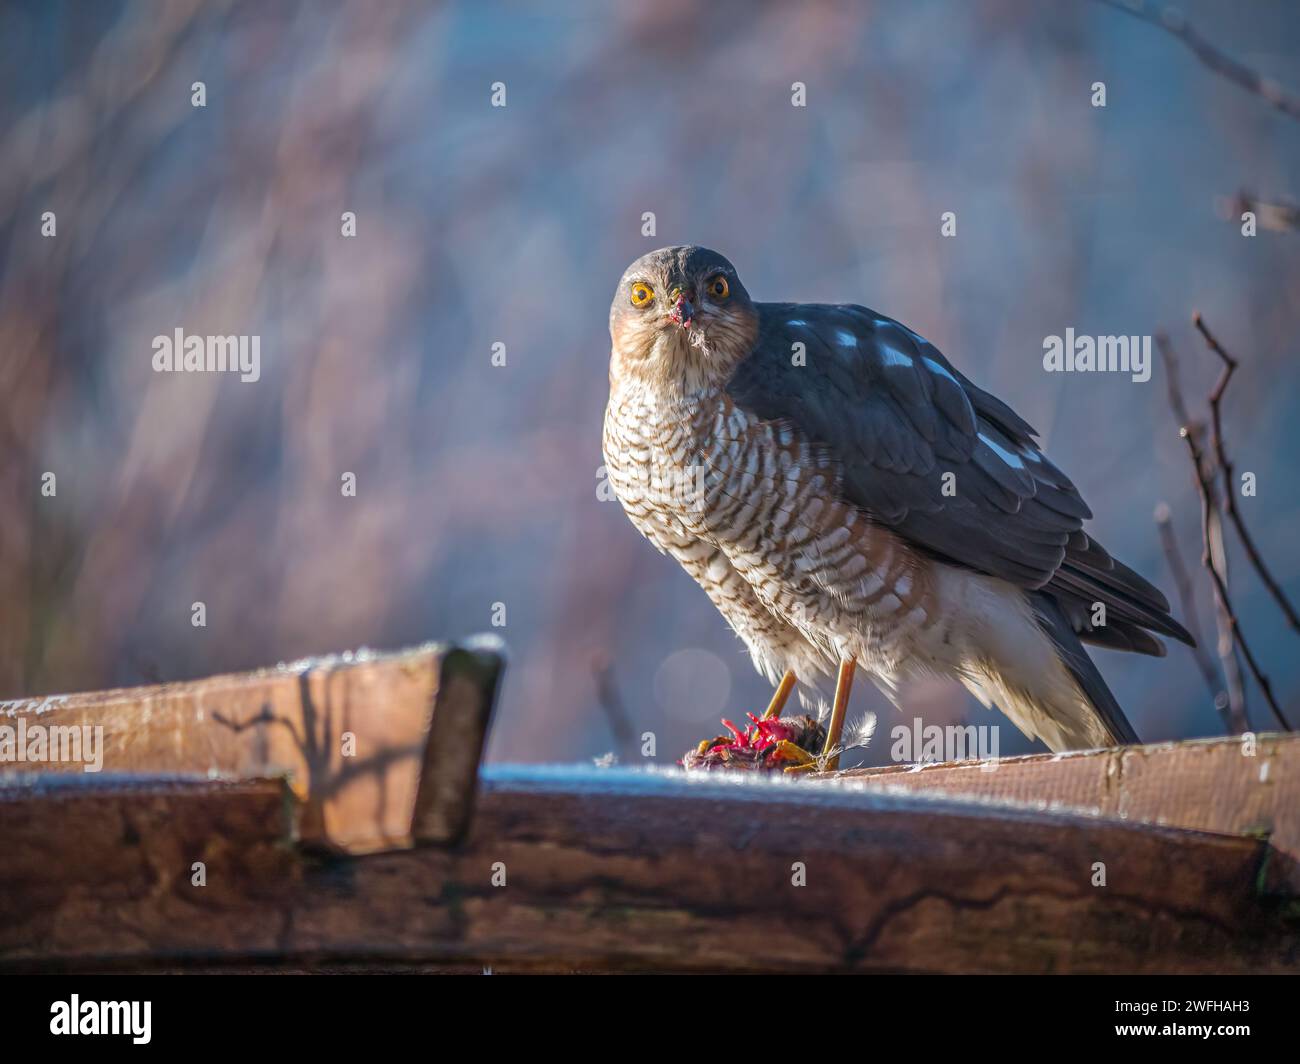 Nahaufnahme von sparrowhawk, der auf Holz sitzt und in die Kamera blickt Stockfoto